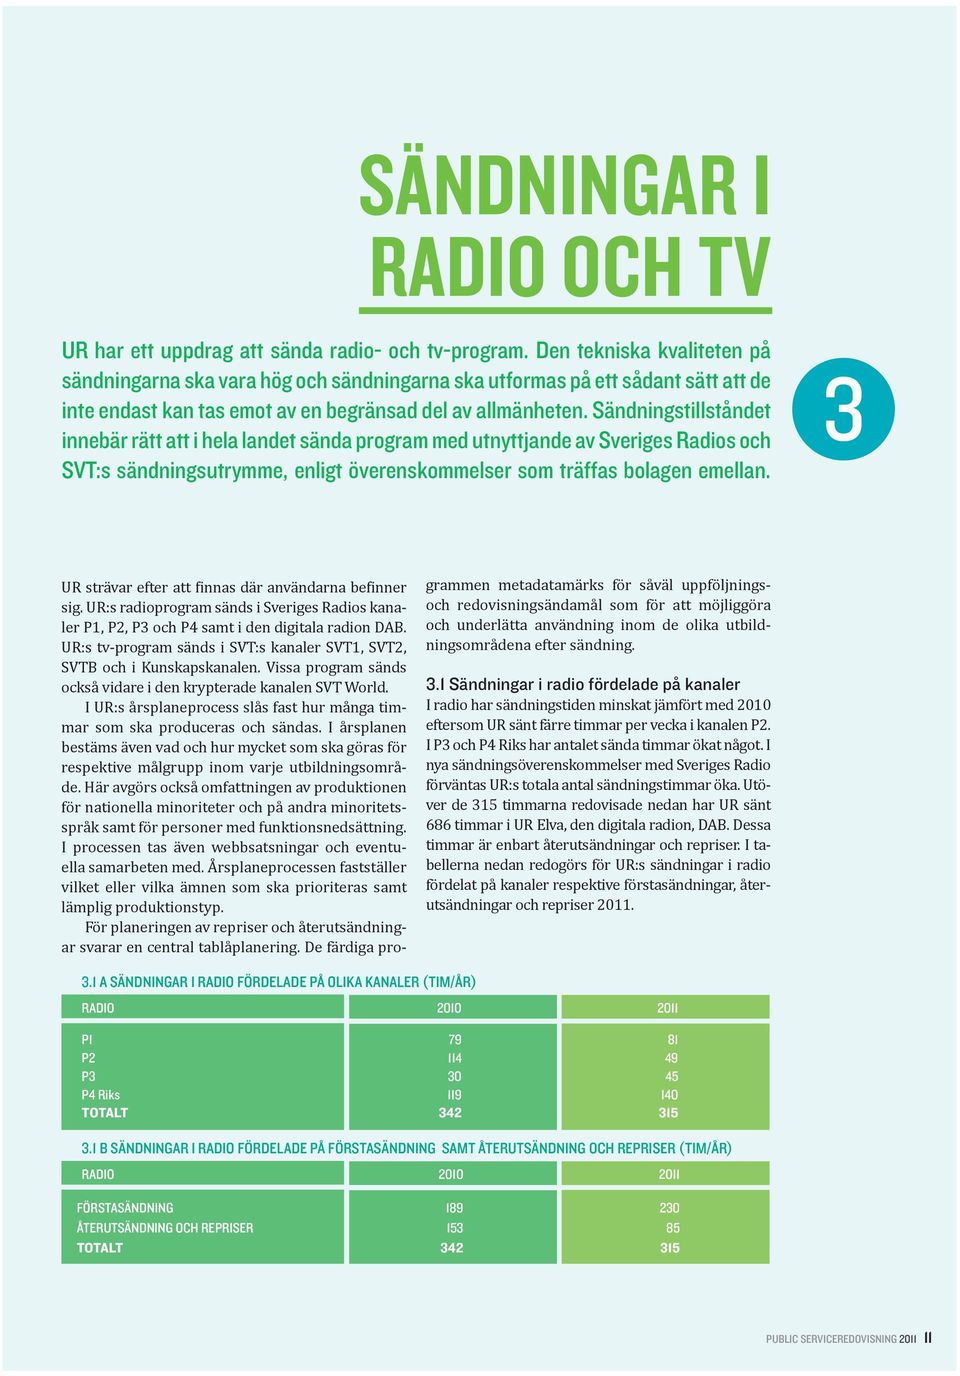 Sändningstillståndet innebär rätt att i hela landet sända program med utnyttjande av Sveriges Radios och SVT:s sändningsutrymme, enligt överenskommelser som träffas bolagen emellan.